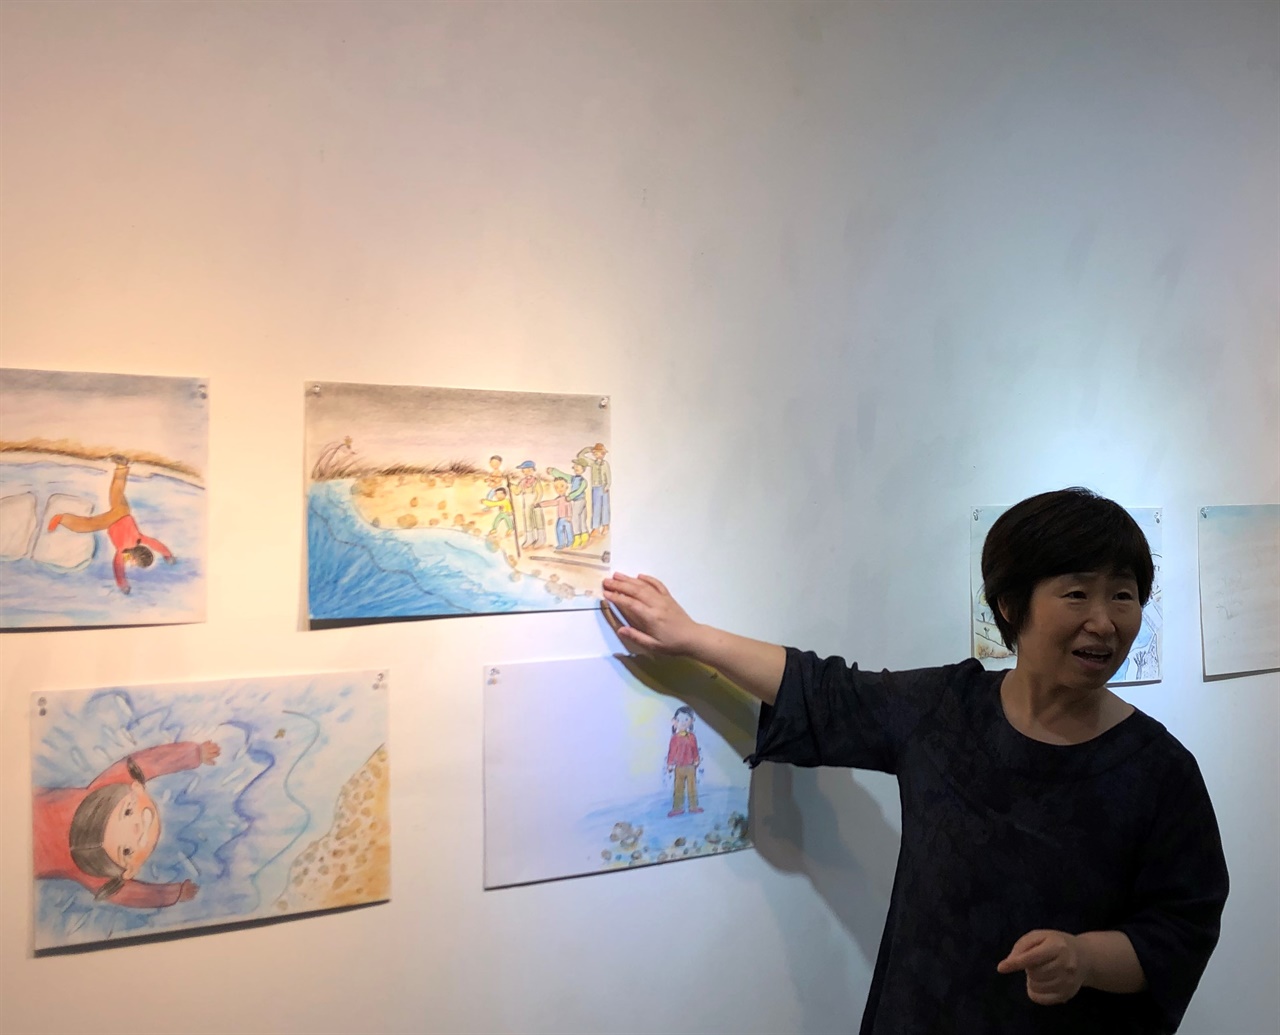 얼음배 작가 김영주 님이 물에 빠졌으니 건져 주지 않는 마을 사람들 마음을 읽고 마음이 놓였다고 설명하고 있다